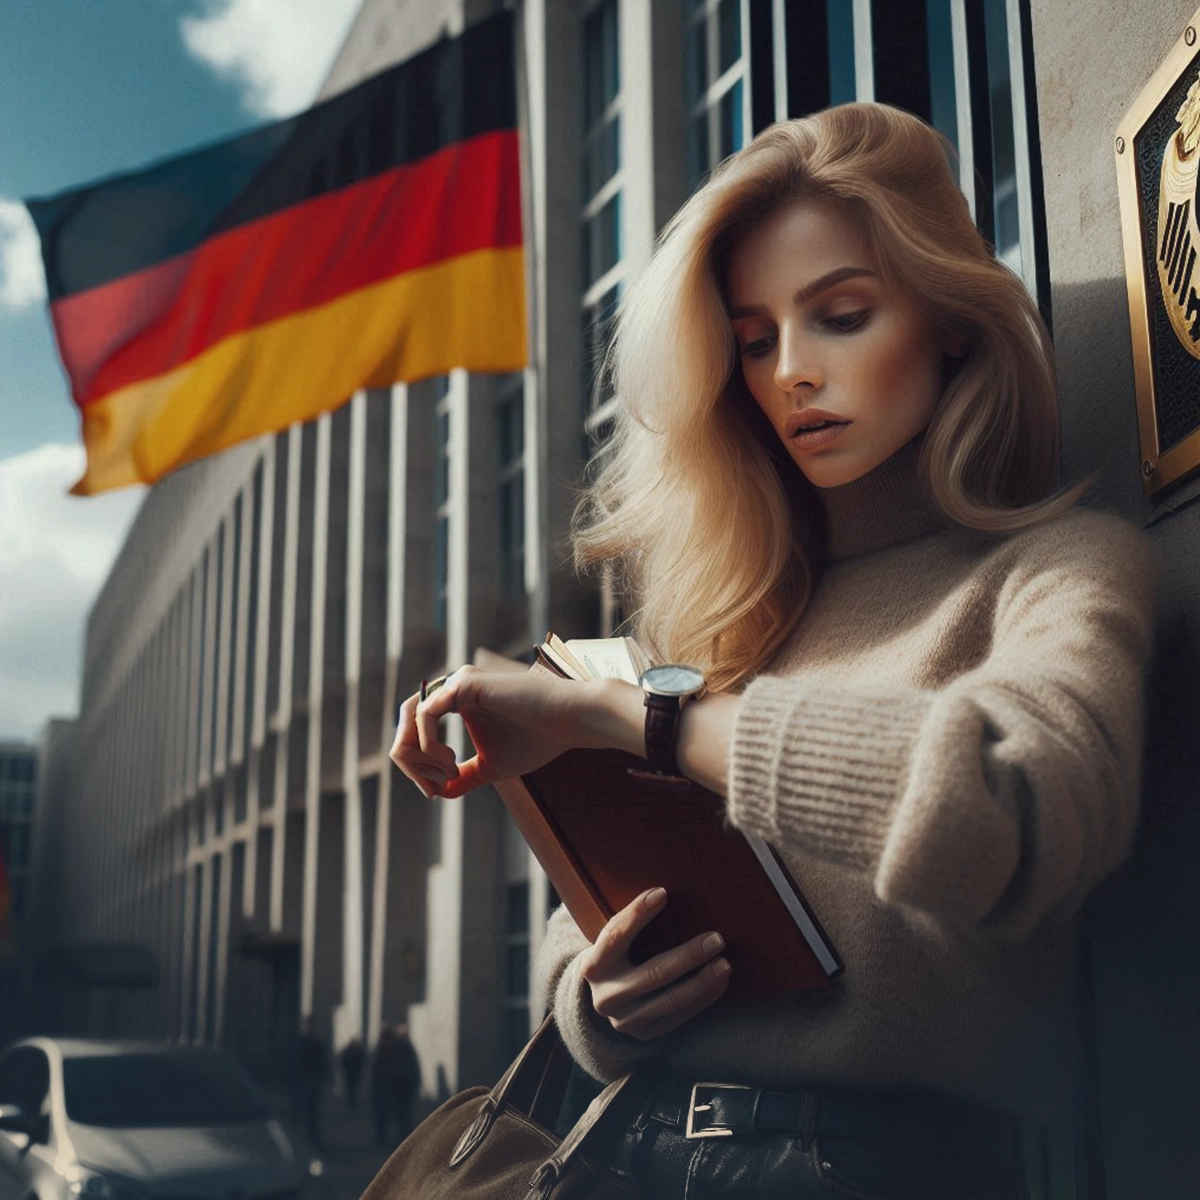 وقت سفارت آلمان برای ویزای دانشجویی